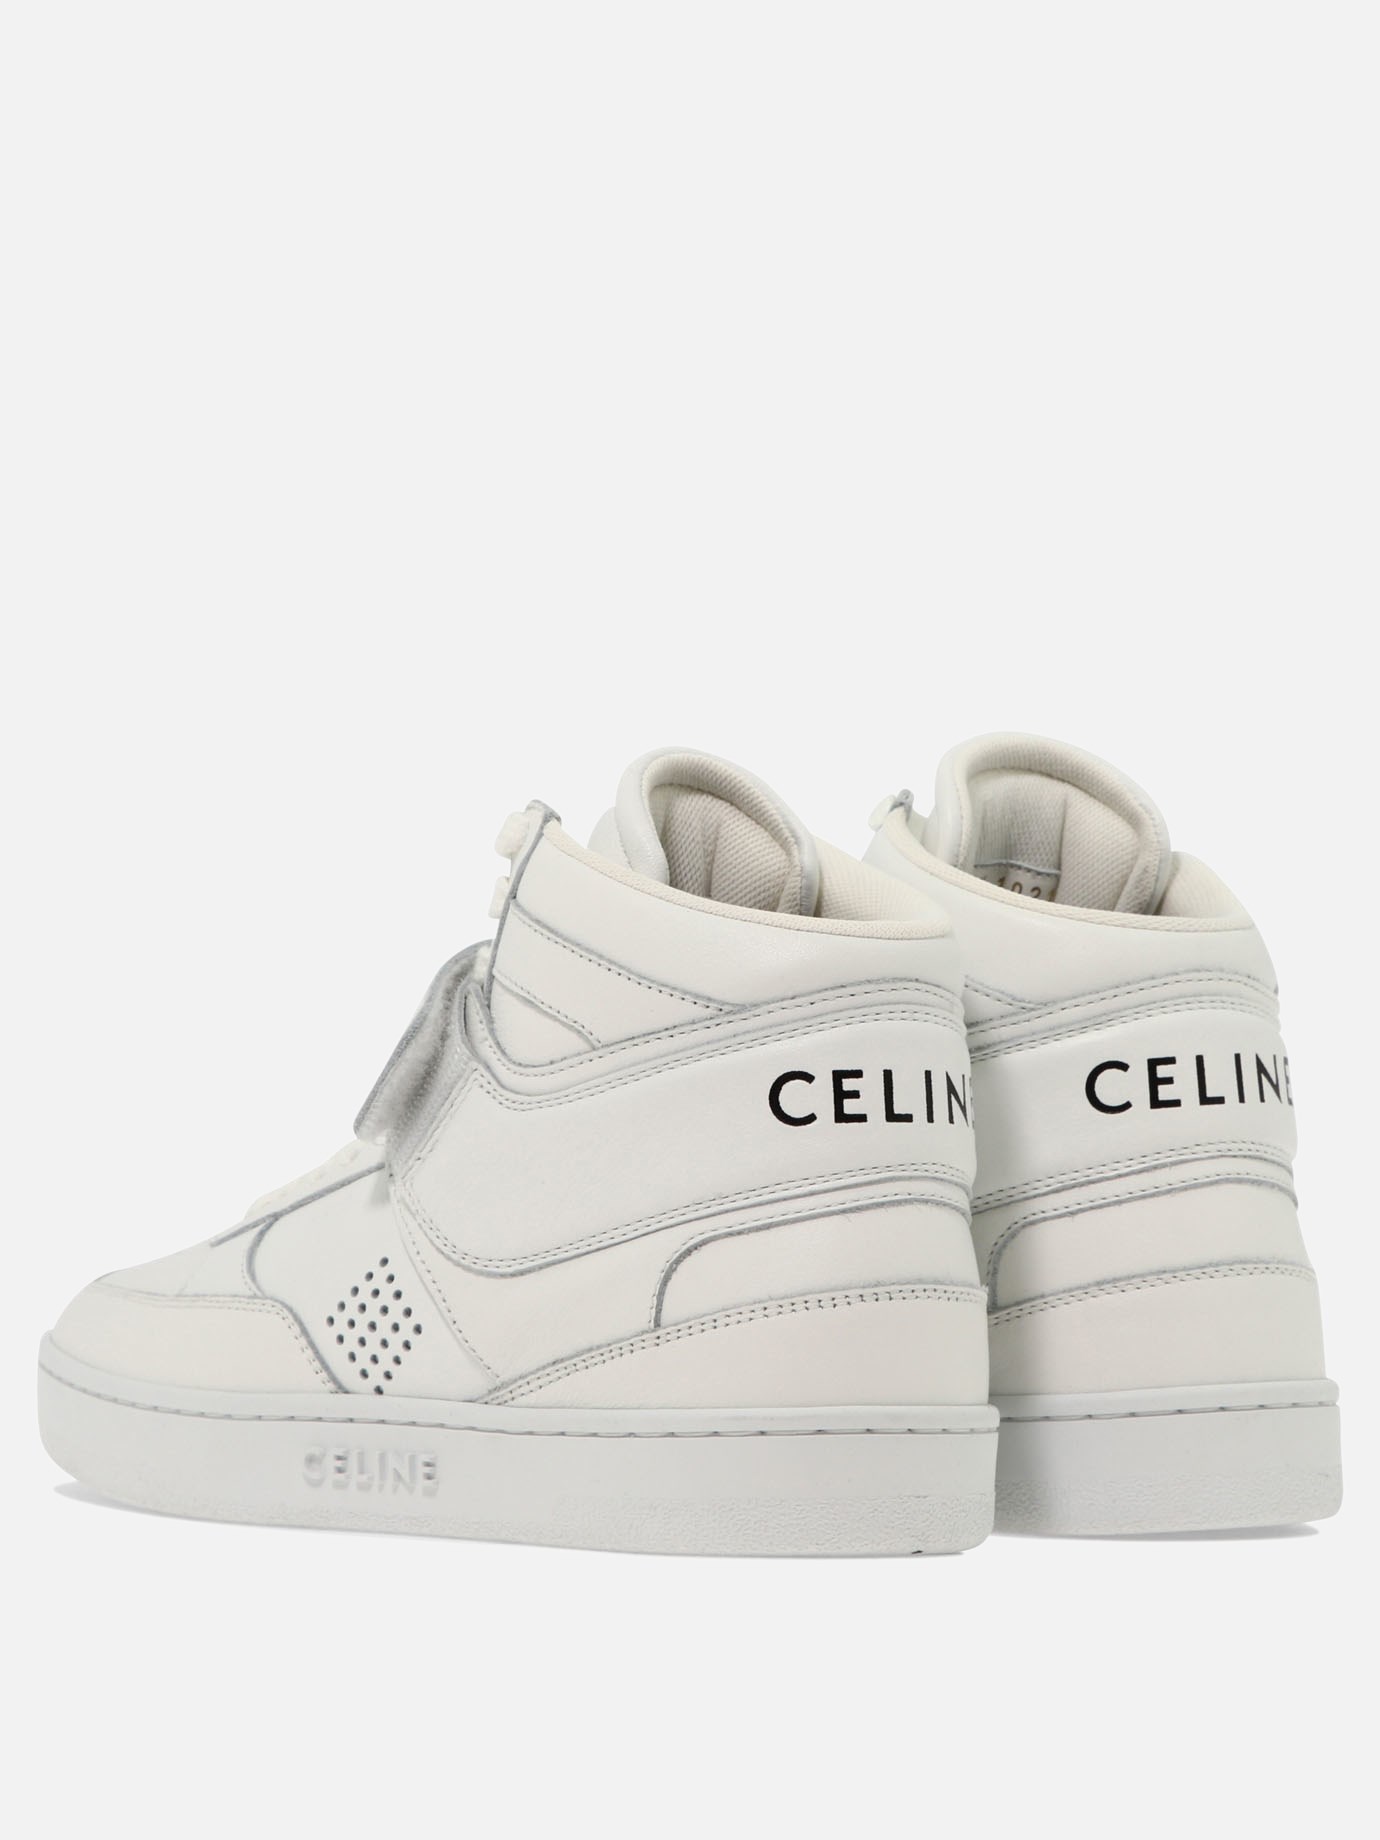  Celine  sneakers by Celine